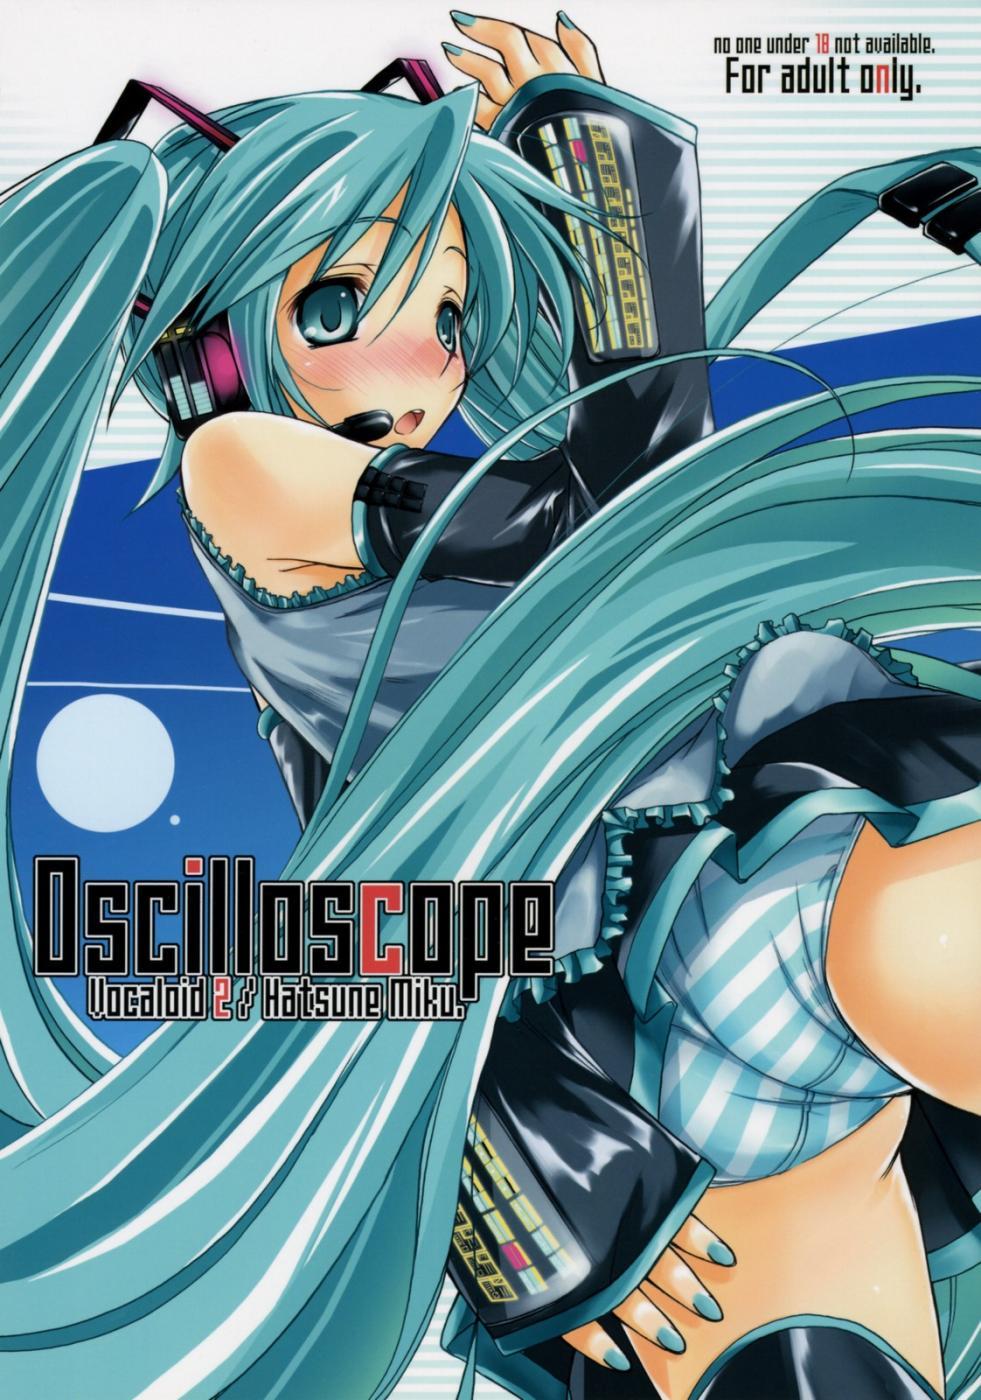 Sexteen Oscilloscope - Vocaloid High Definition - Picture 1